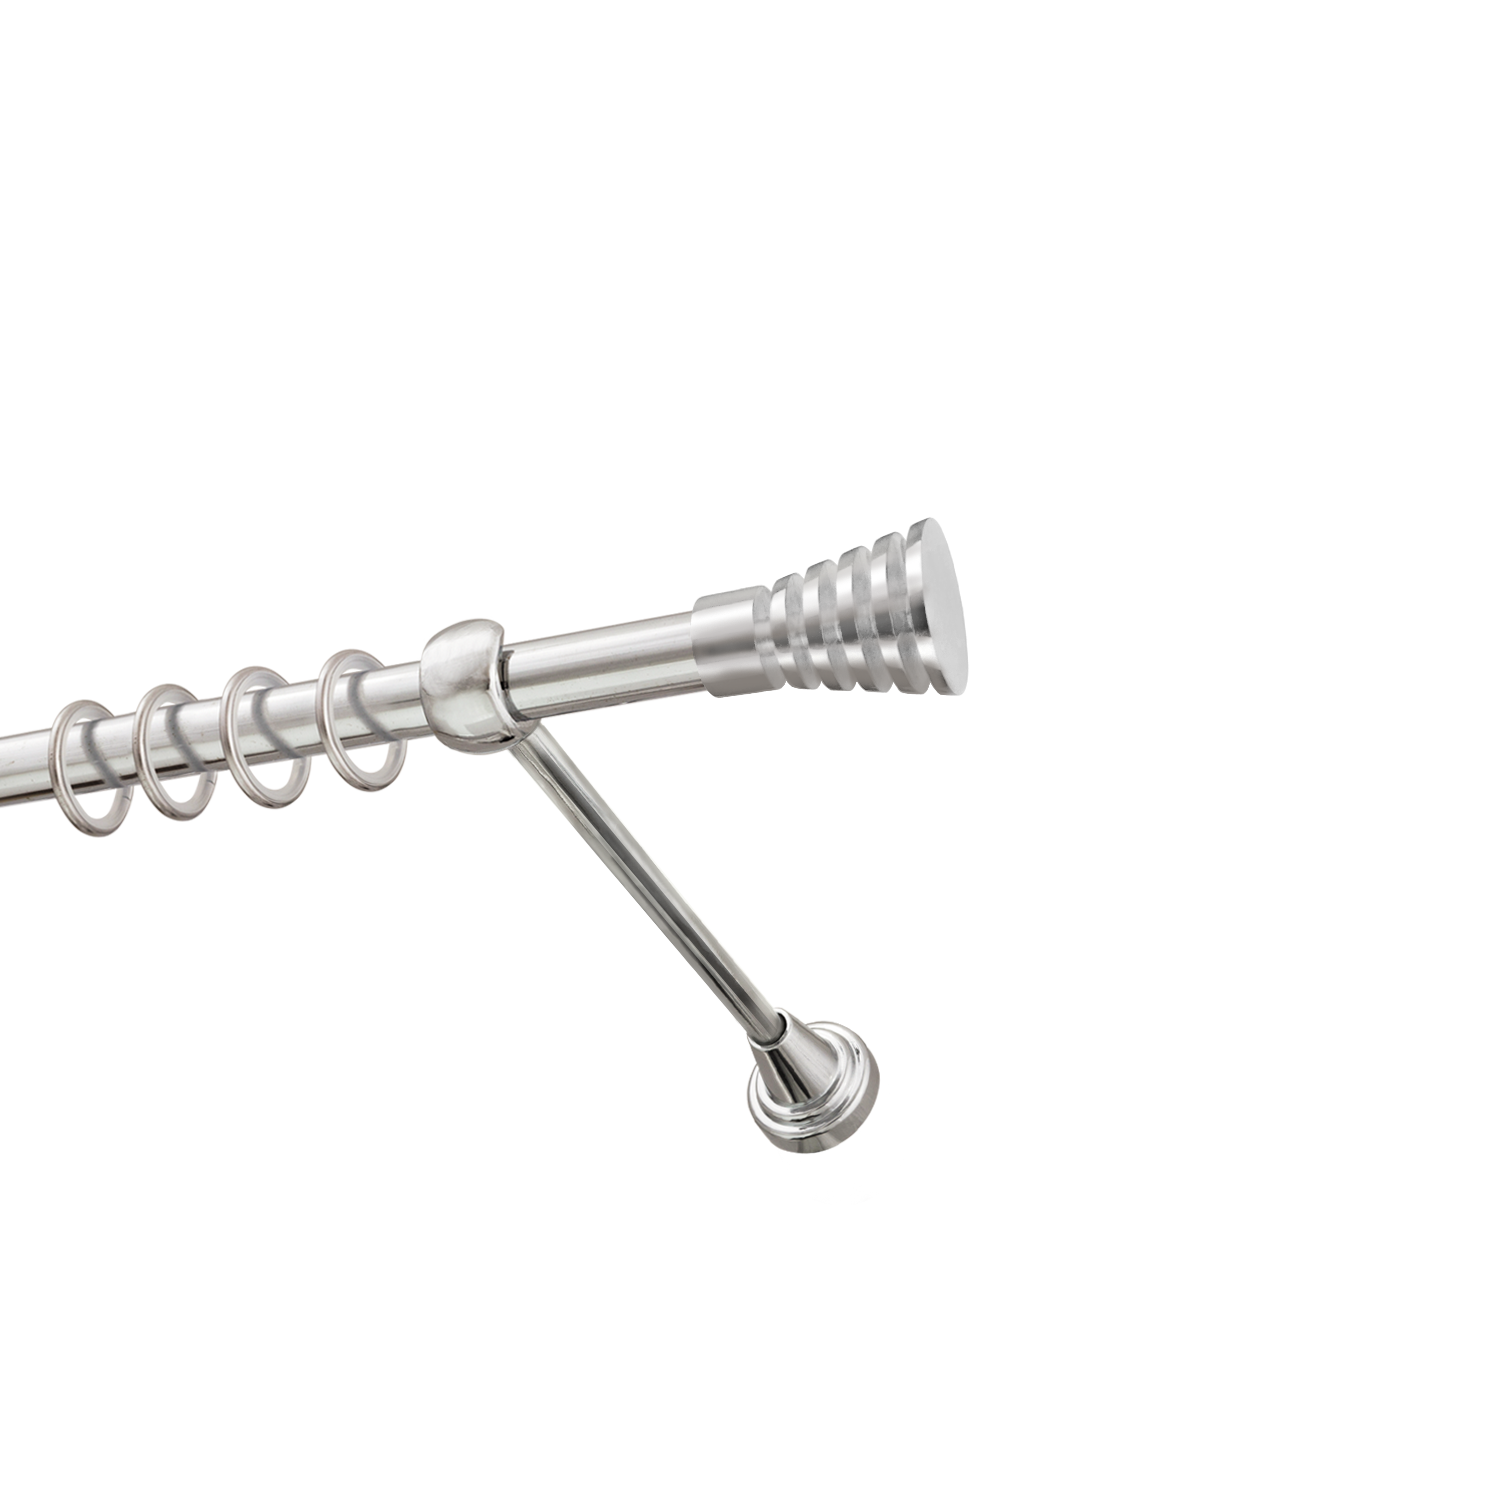 Металлический карниз для штор Верона, однорядный 16 мм, серебро, гладкая штанга, длина 200 см - фото Wikidecor.ru